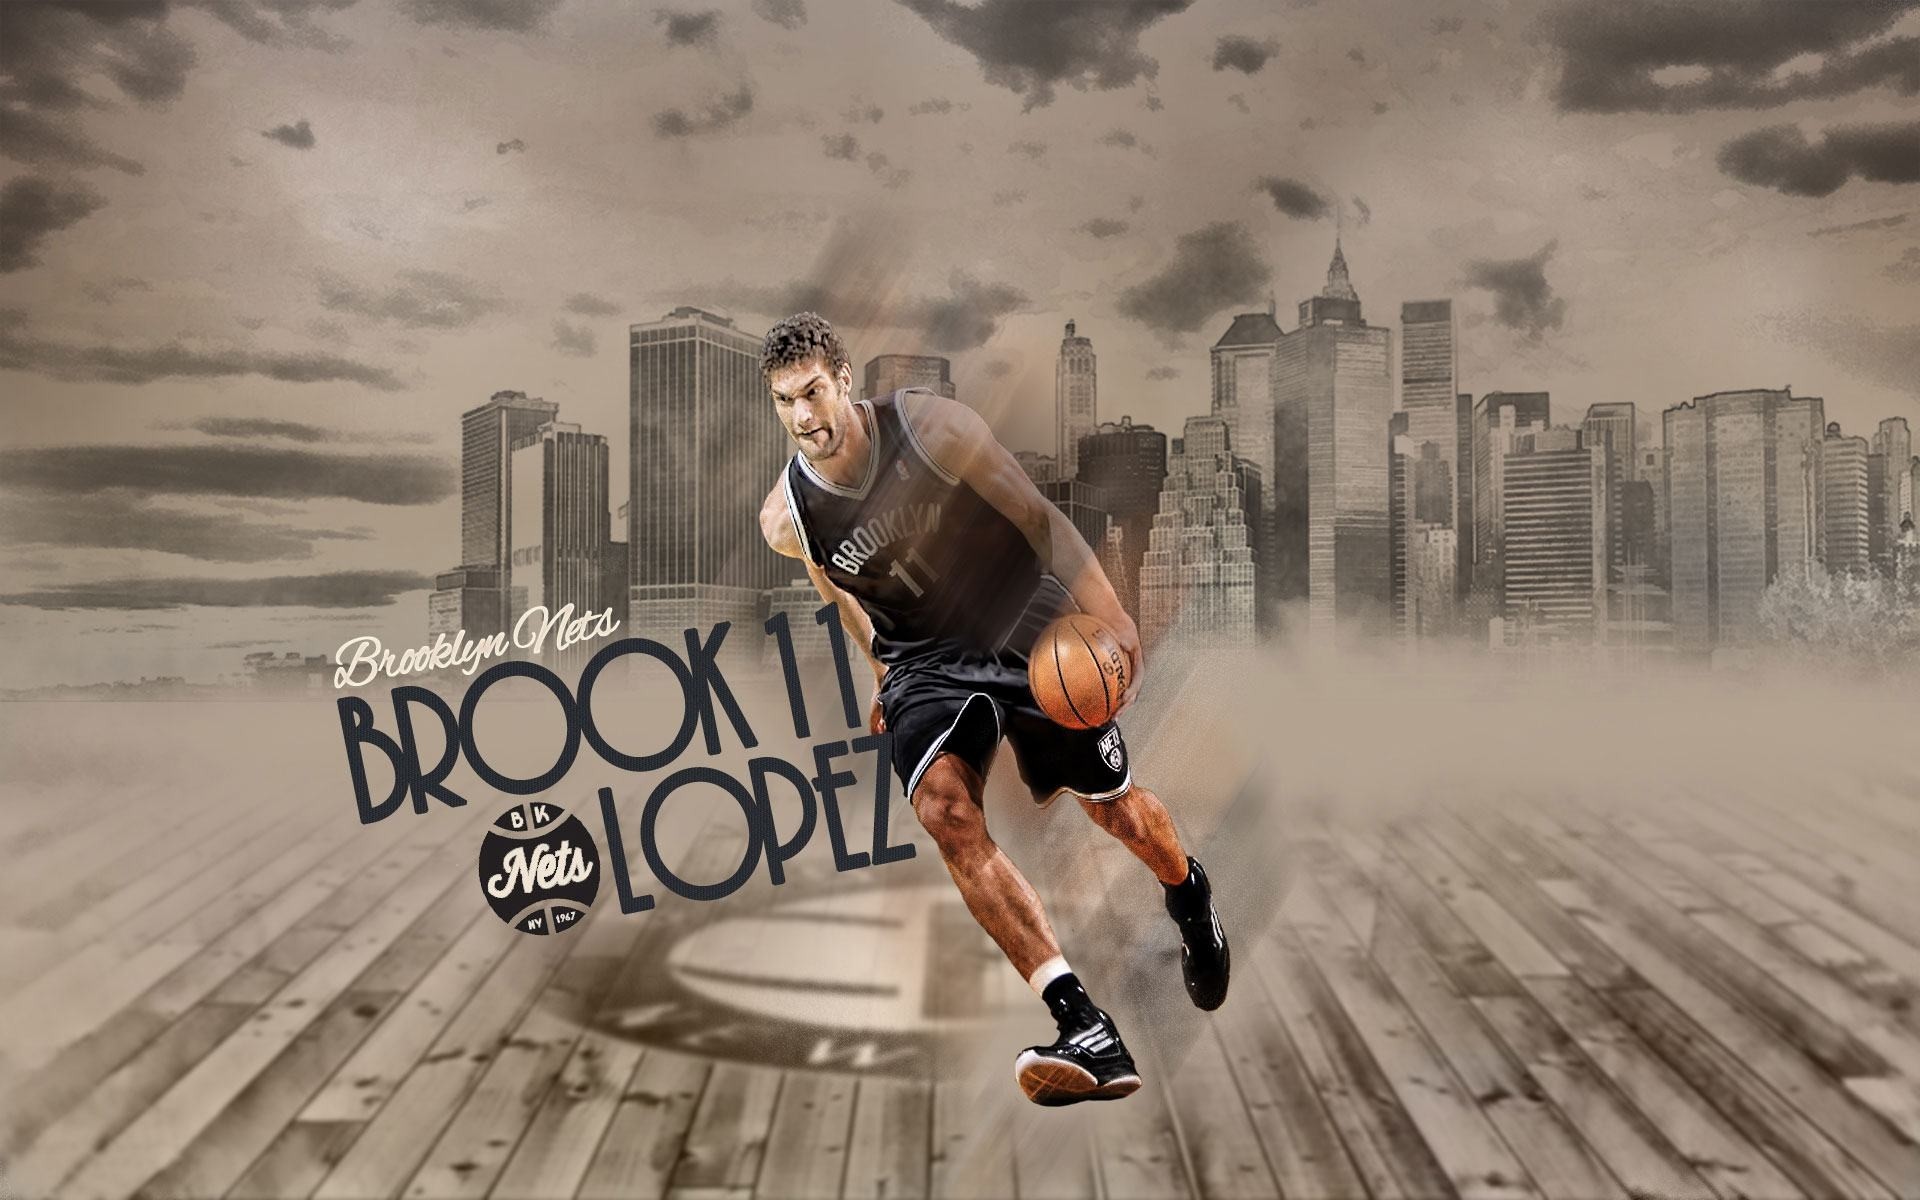 1920x1200 Wallpapers Backgrounds - Brook Lopez Brooklyn Nets 2013 Best Center NBA  Players Wallpaper